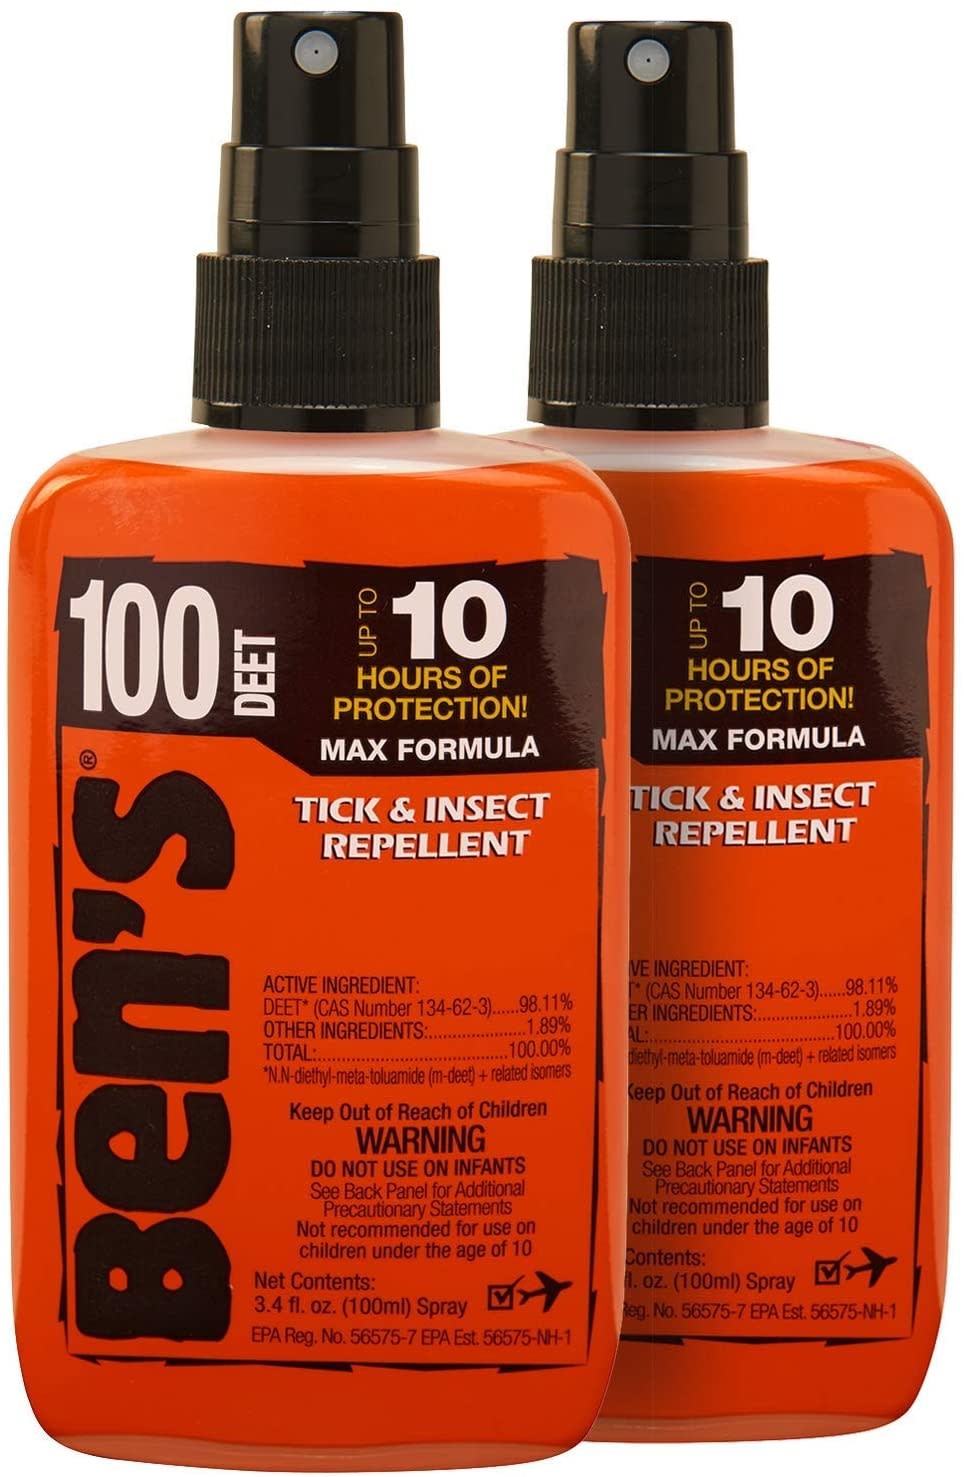 Ben's Tick & Insect Repellent - Ben's